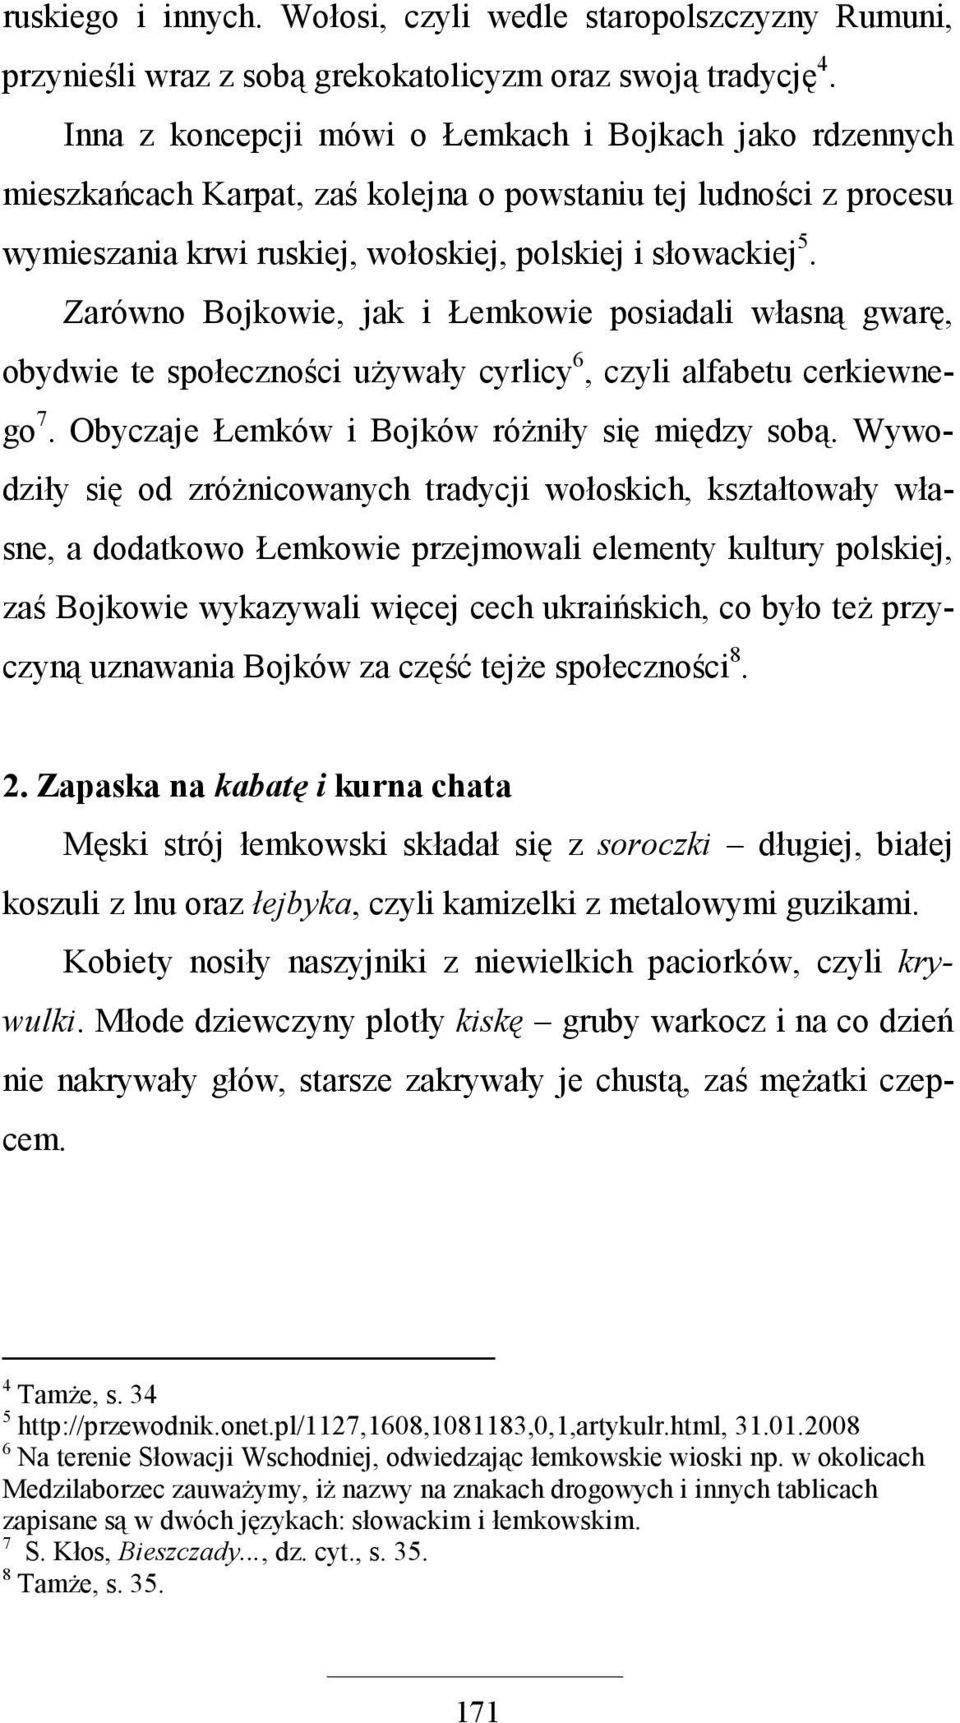 Zarówno Bojkowie, jak i Łemkowie posiadali własną gwarę, obydwie te społeczności uŝywały cyrlicy 6, czyli alfabetu cerkiewnego 7. Obyczaje Łemków i Bojków róŝniły się między sobą.